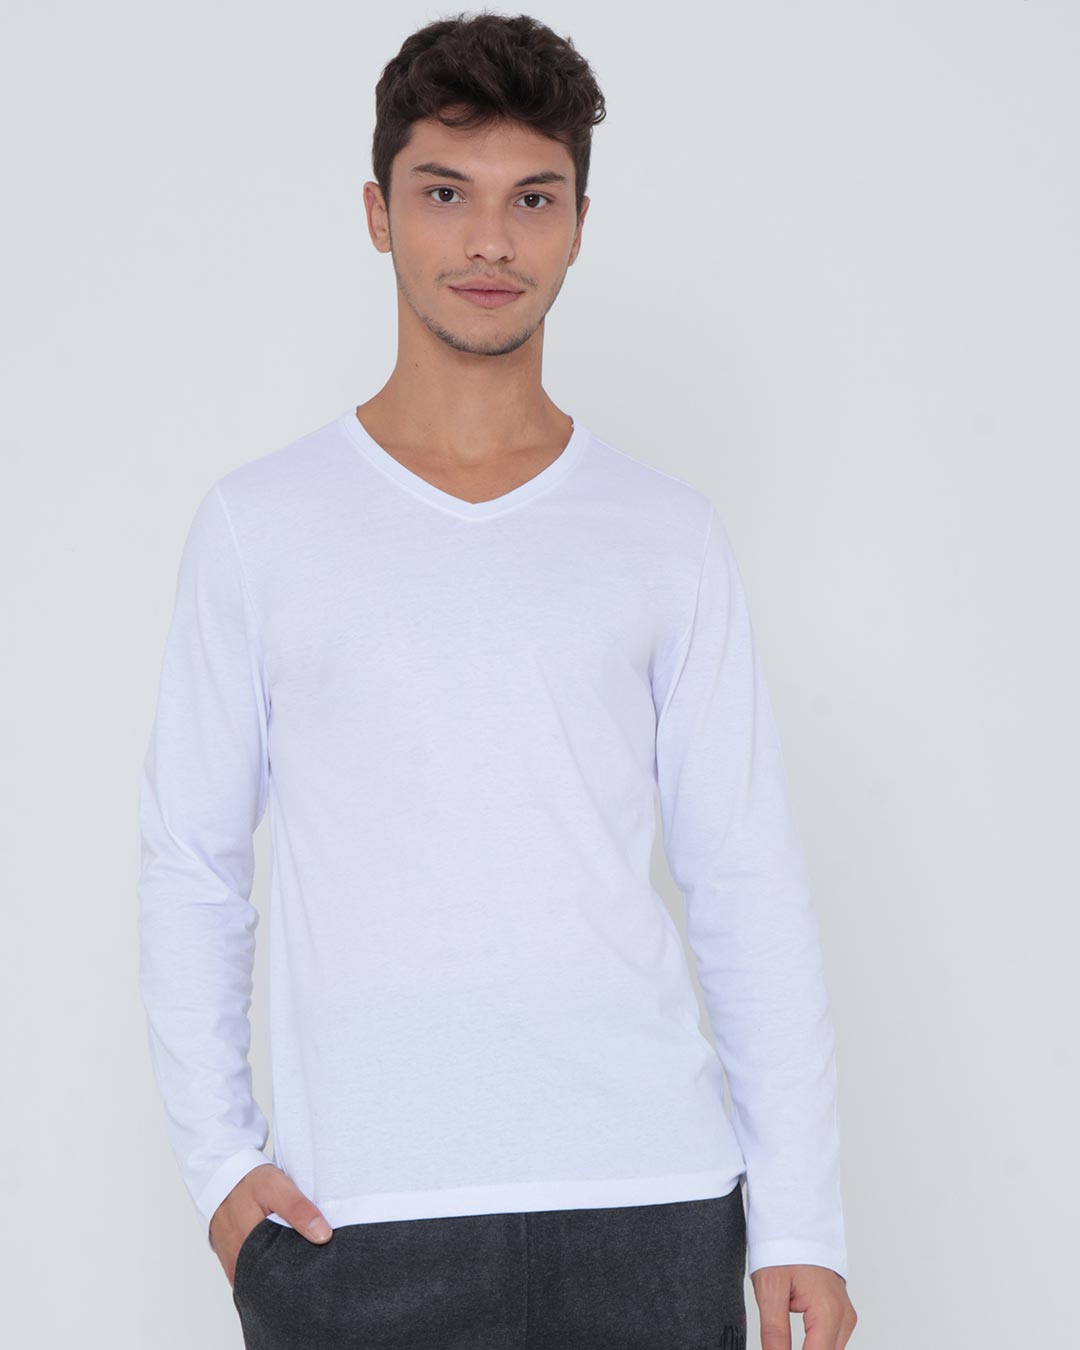 Camiseta-Ko526-G--V--Ml-Branco---Branco